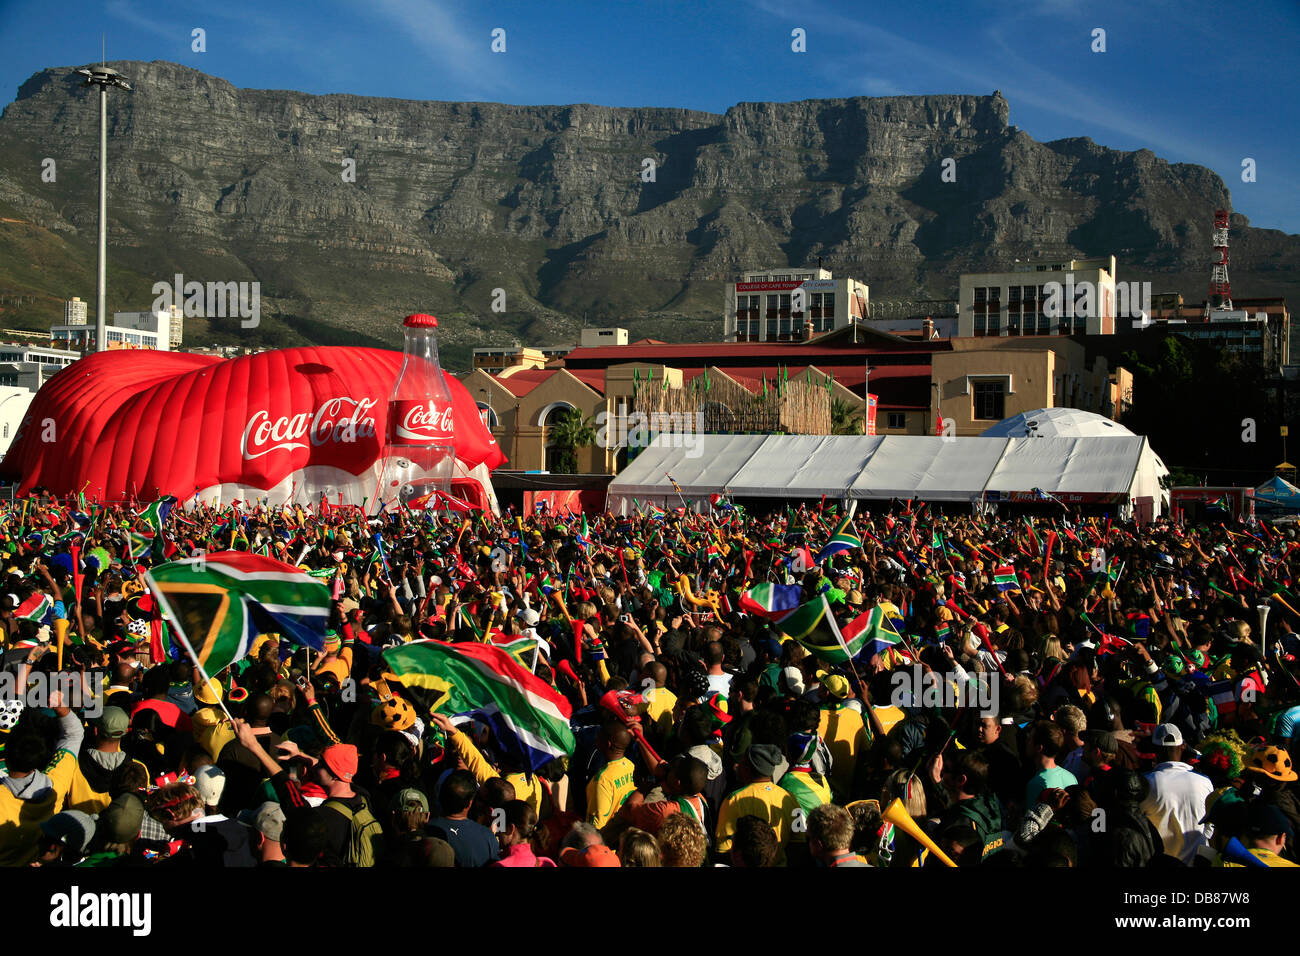 Des fans de l'Afrique du Sud célèbre ventilateur Grand Parade Park fierté passion brandissant des drapeaux de l'Afrique du Sud à Cape Town dans la montagne de la table Banque D'Images